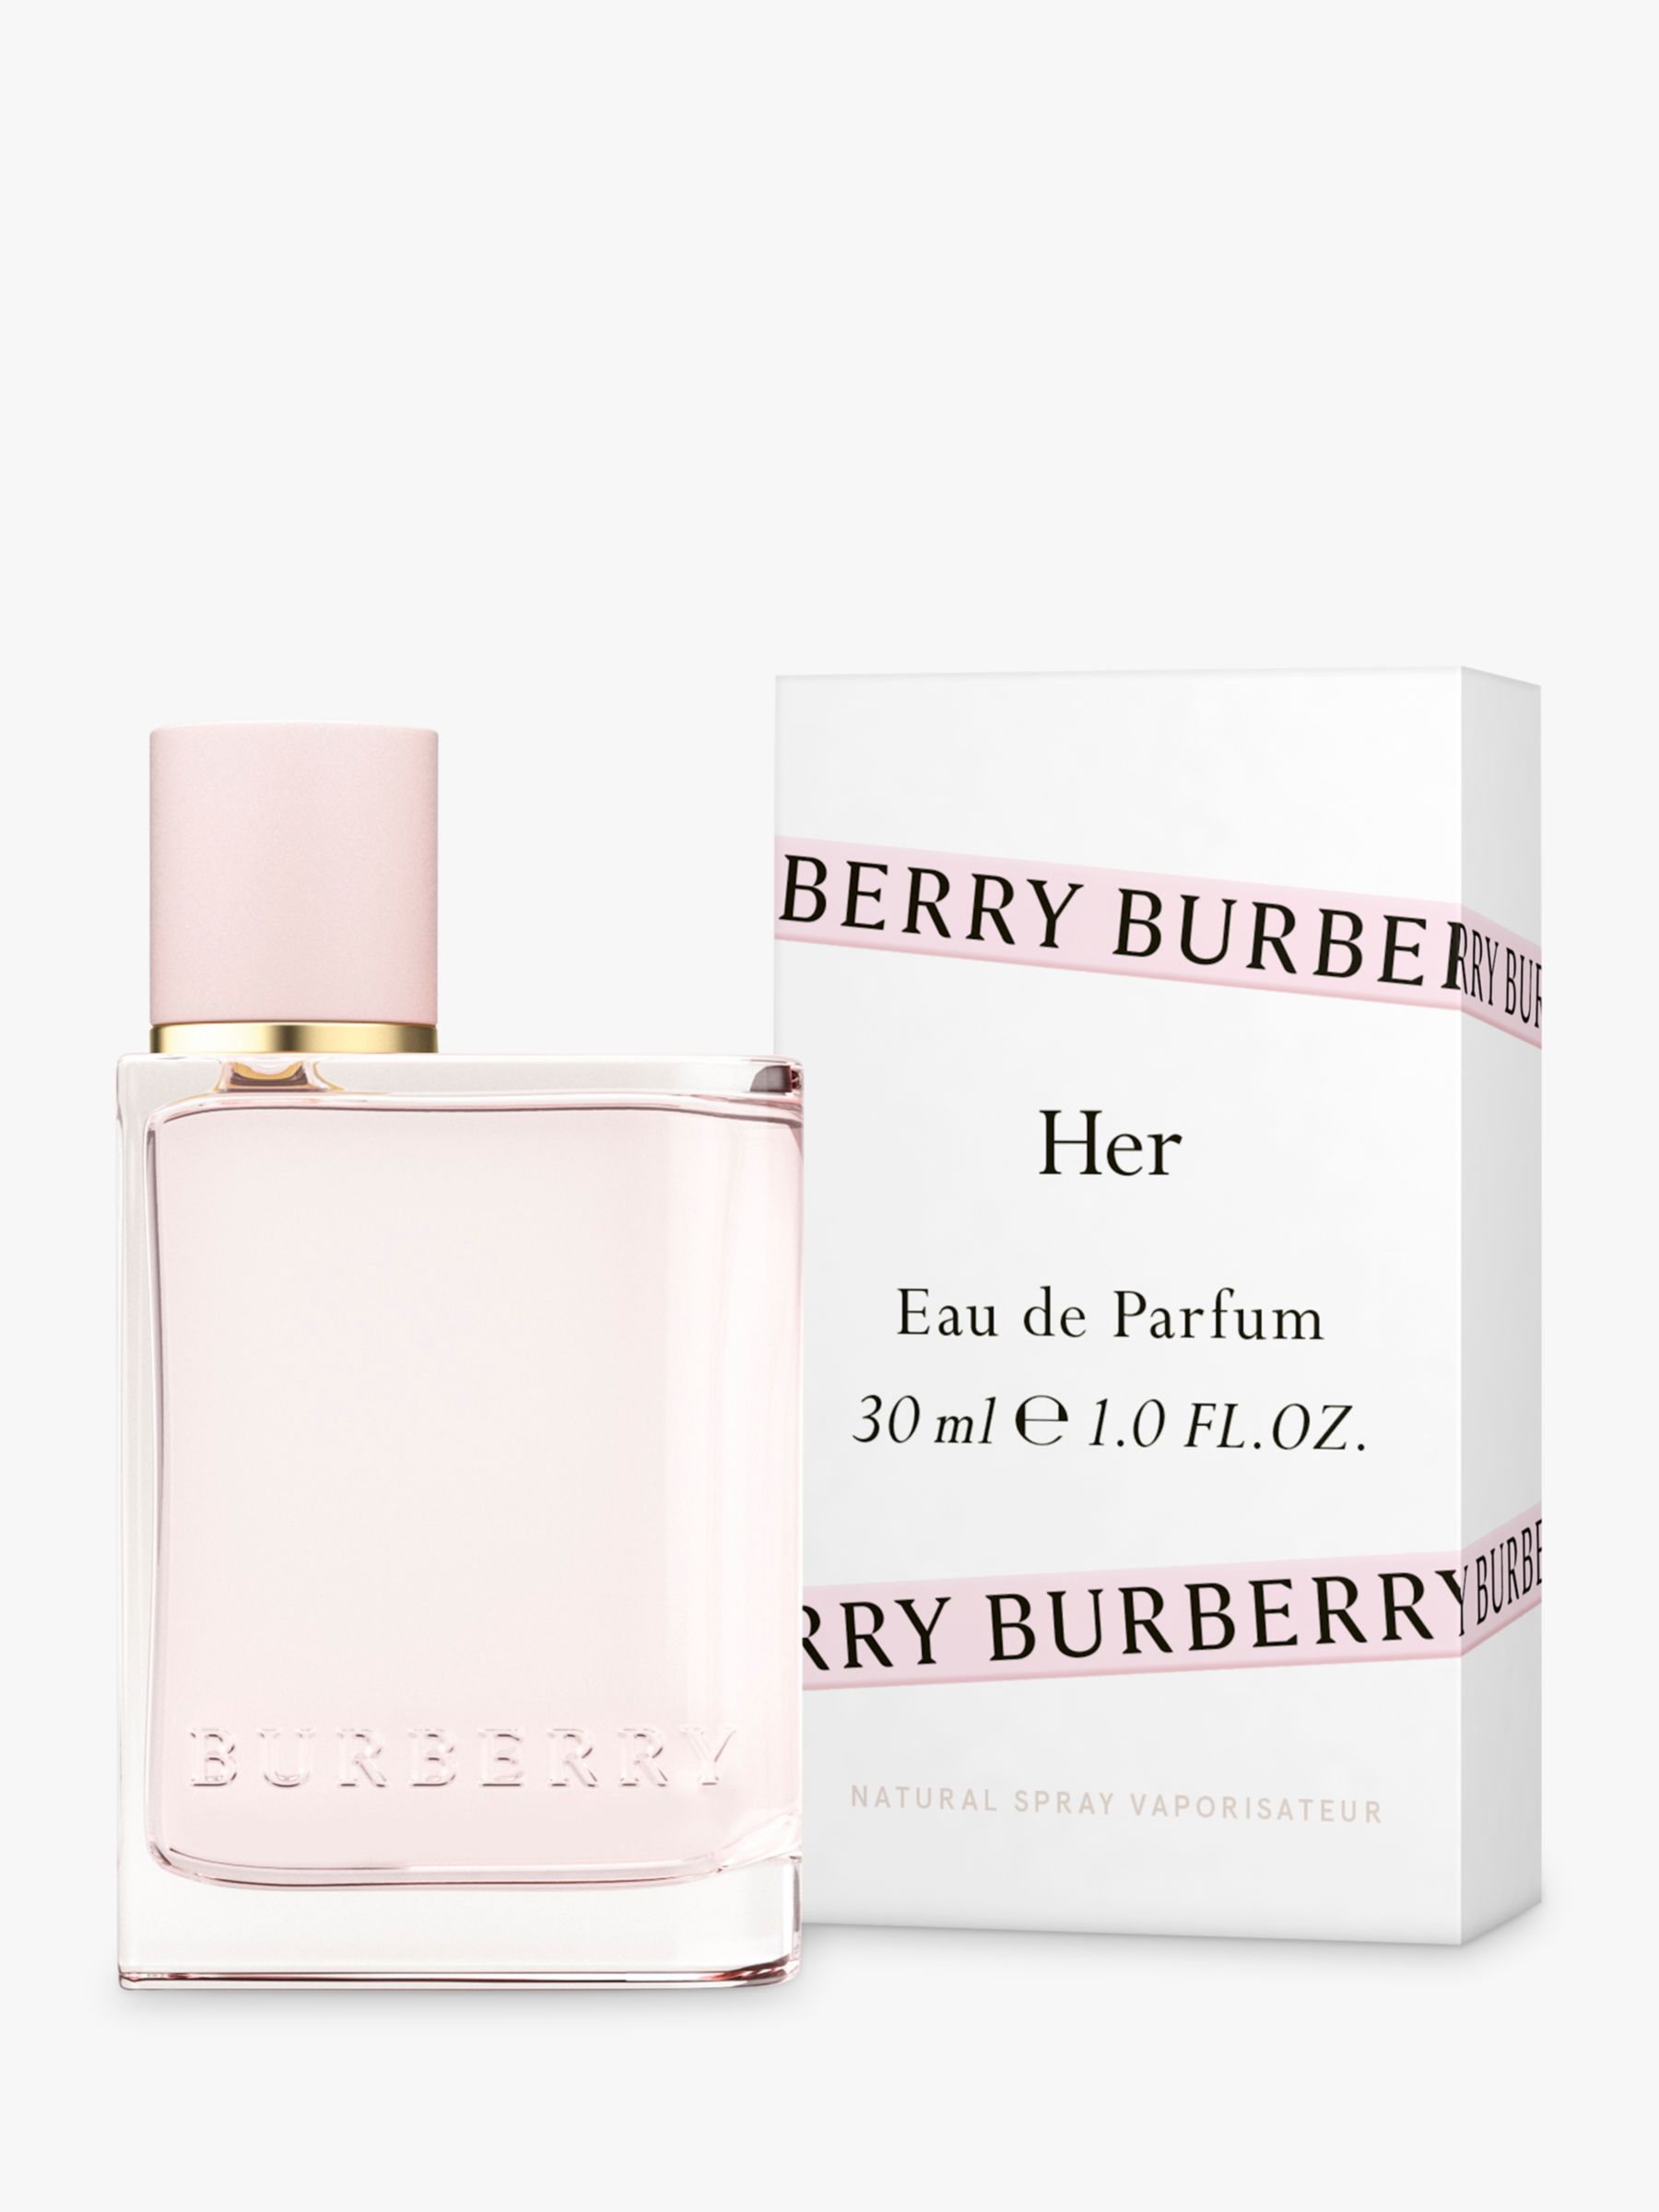 burberry her eau de parfum review